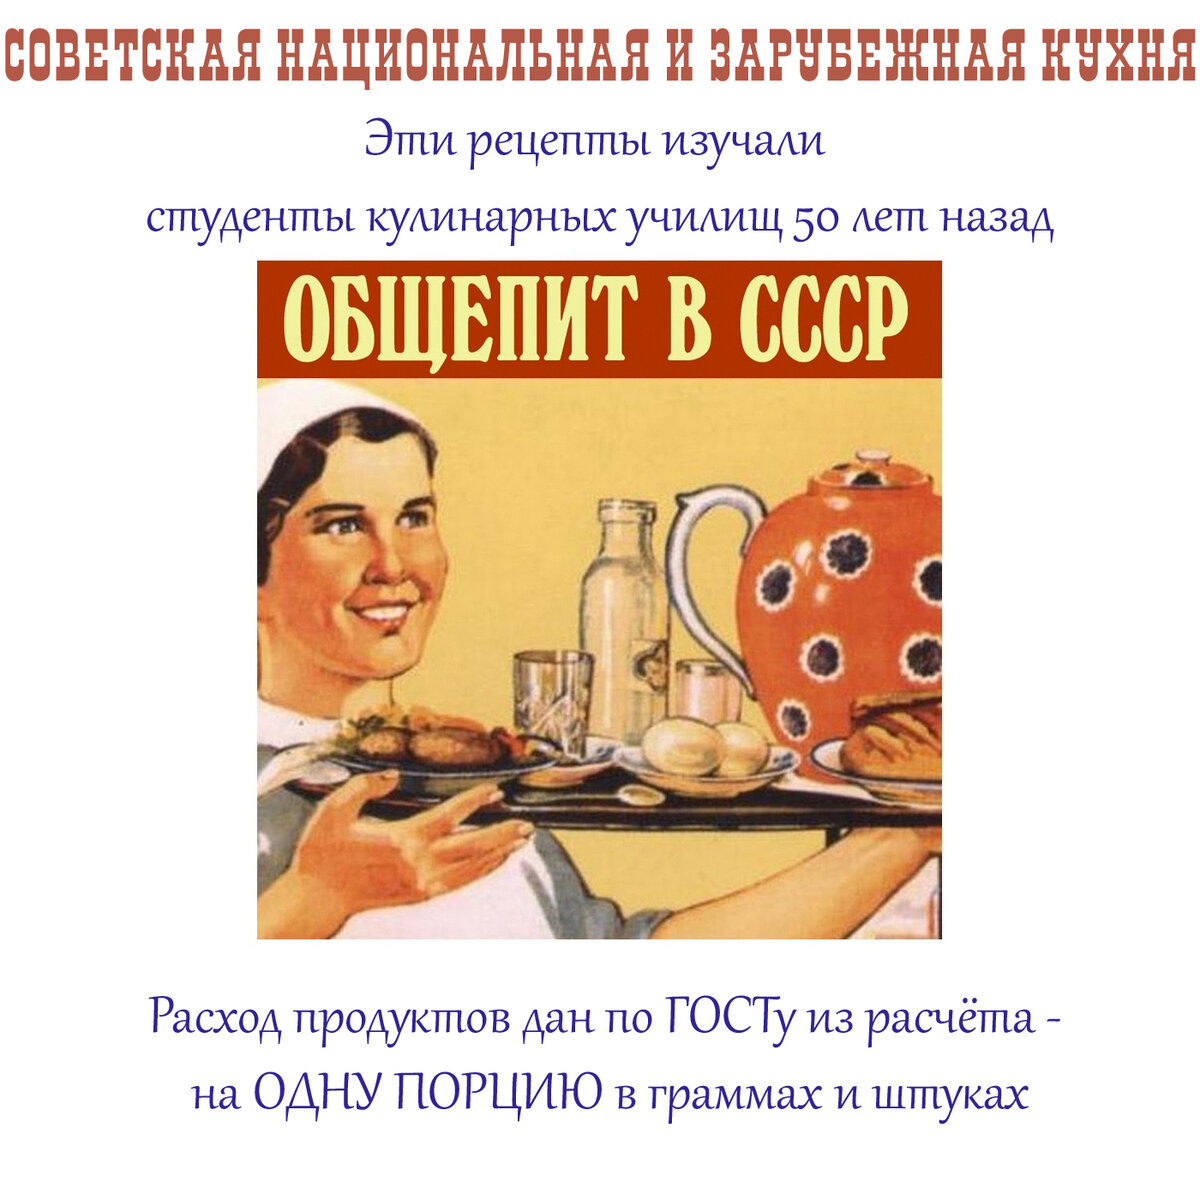 Советские рецепты